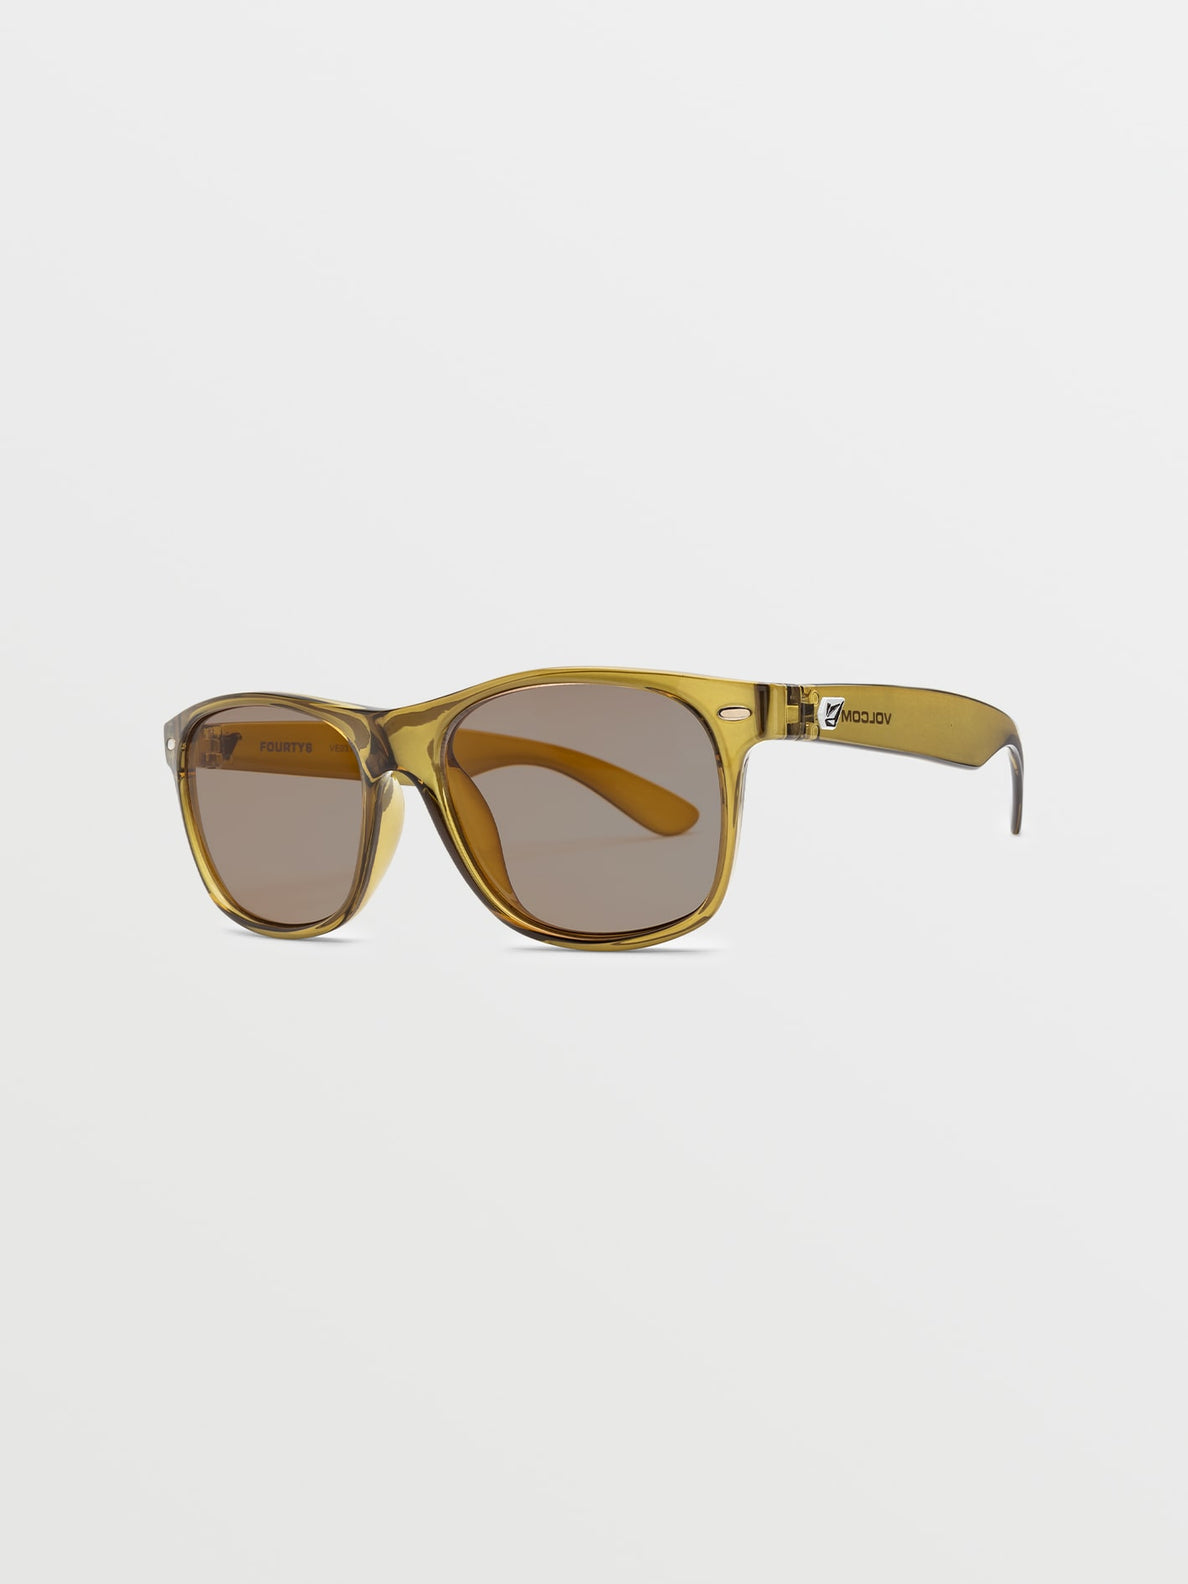 Gafas de sol Volcom Fourty6 Sunglasses - Gloss Olive/Light Bronze | Gafas de sol | Volcom Shop | surfdevils.com